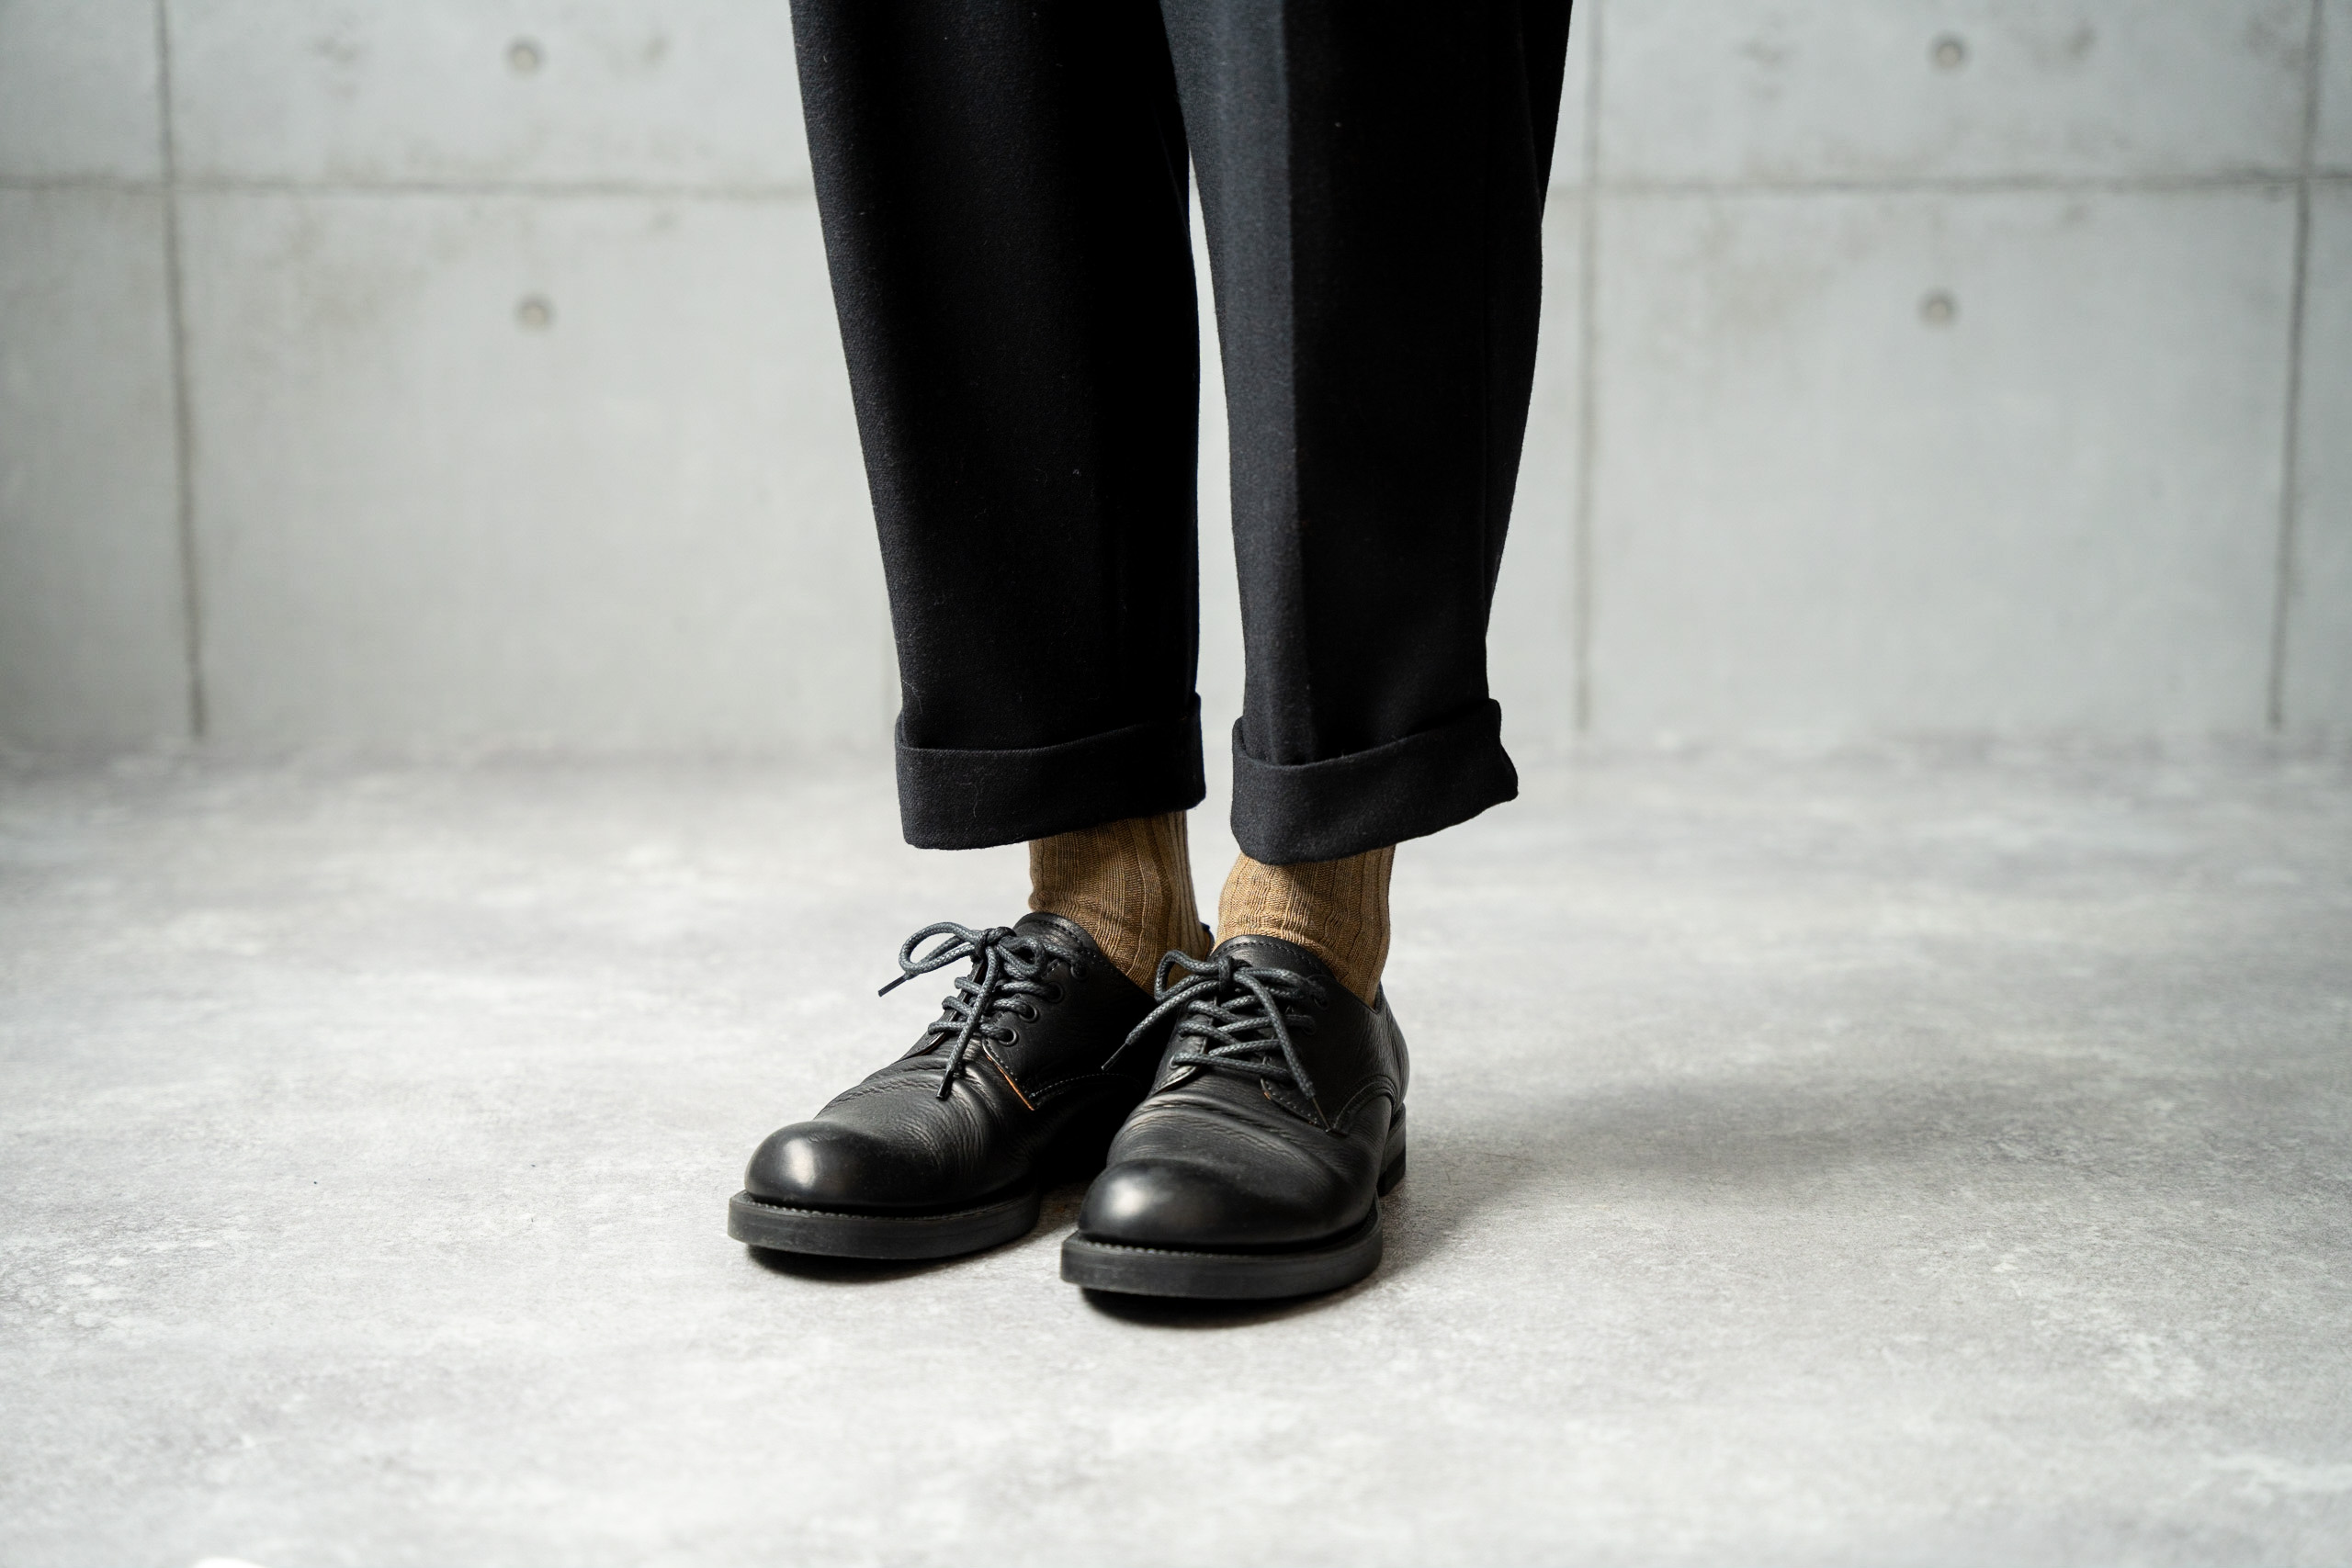 HARUSAKU メランジリブソックス 5足セット （25cm〜27cm）／靴下 くつ下 日本製 消臭ソックス おしゃれ シンプル ビジネス カジュアル / メンズ  紳士